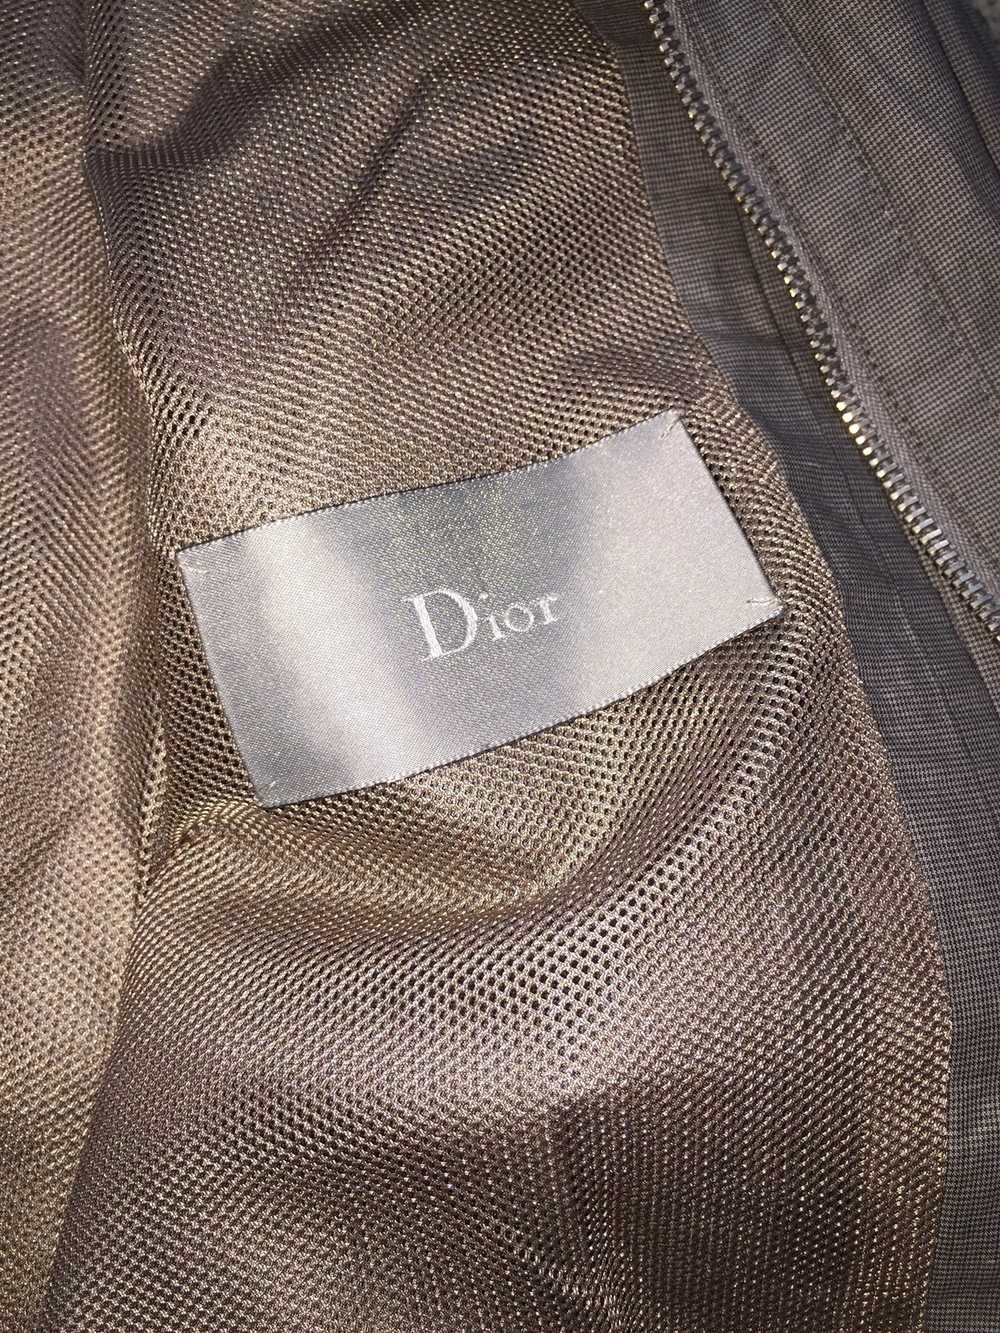 Dior × Hedi Slimane Dior jacket - image 7